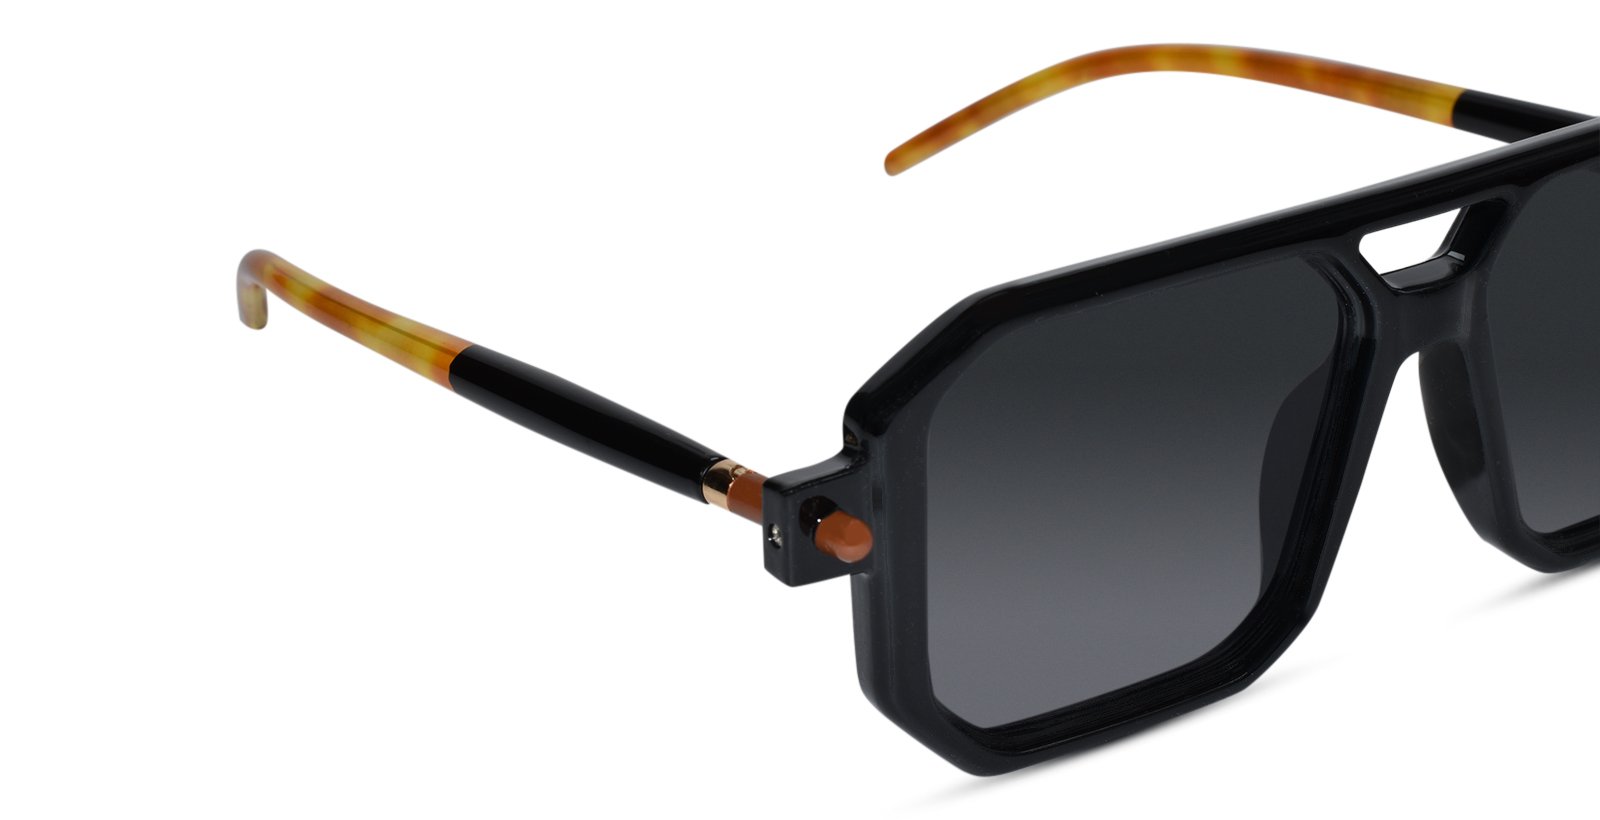 Designer Urban Black Sunglasses